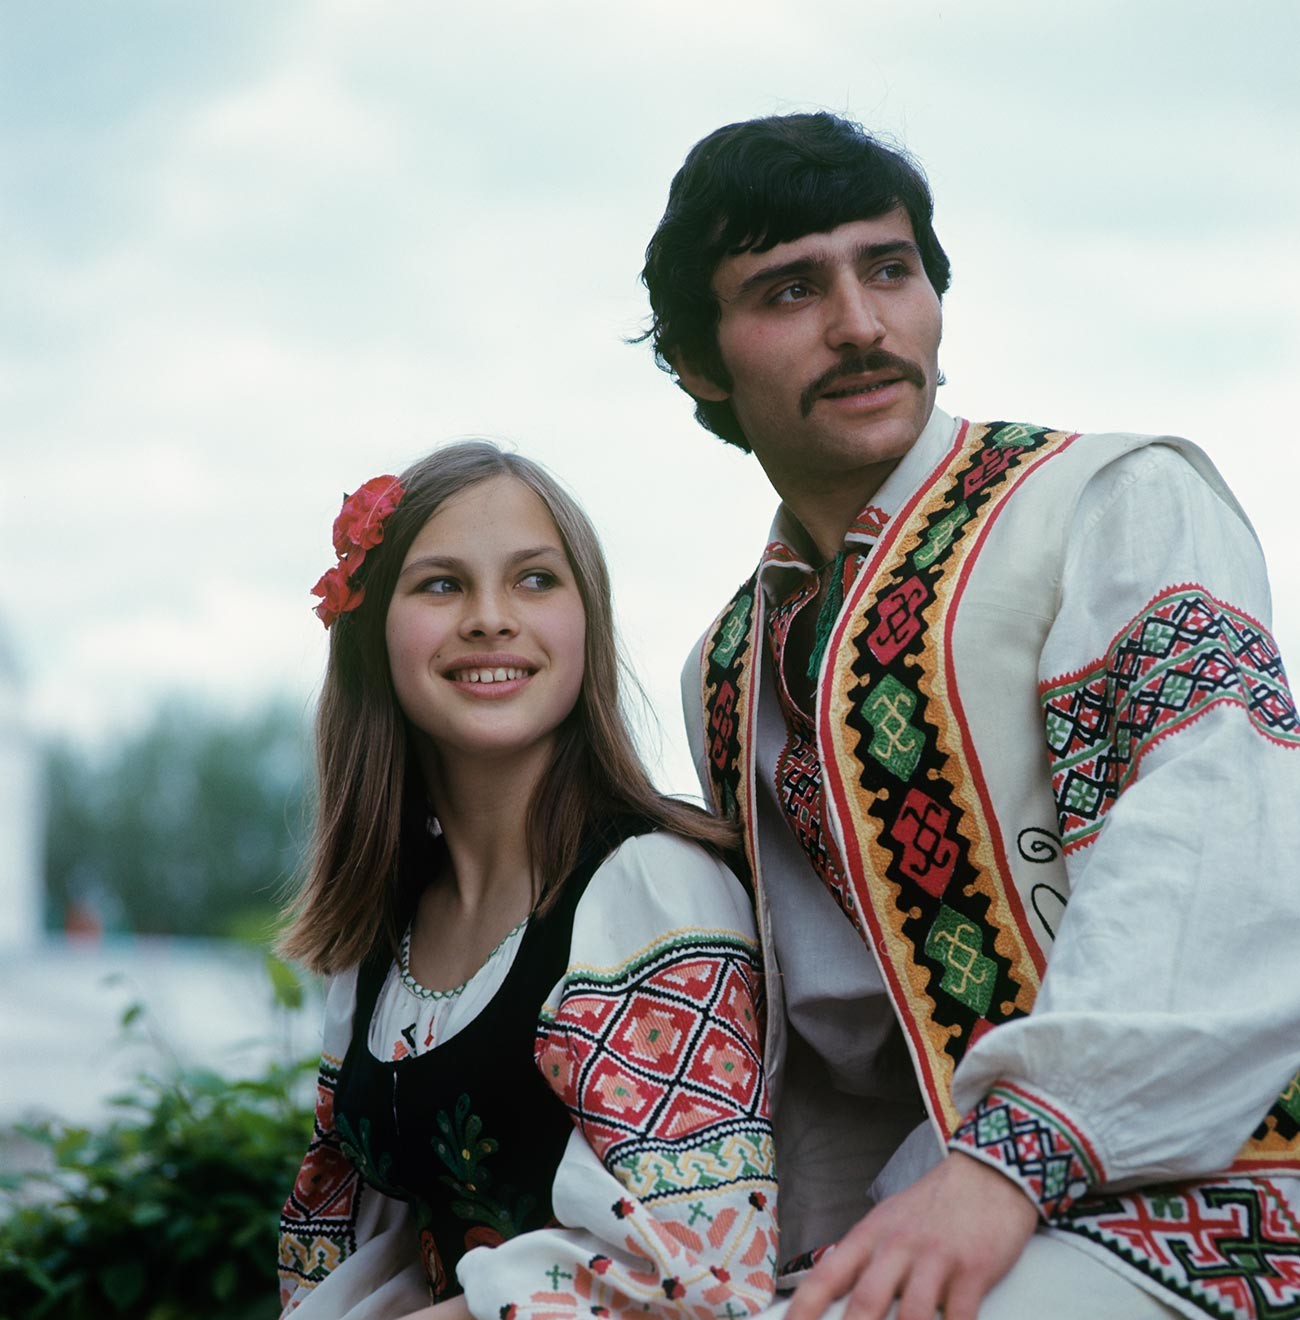 Mitglieder des Volkstanzensembles Moldawanesca, 1975